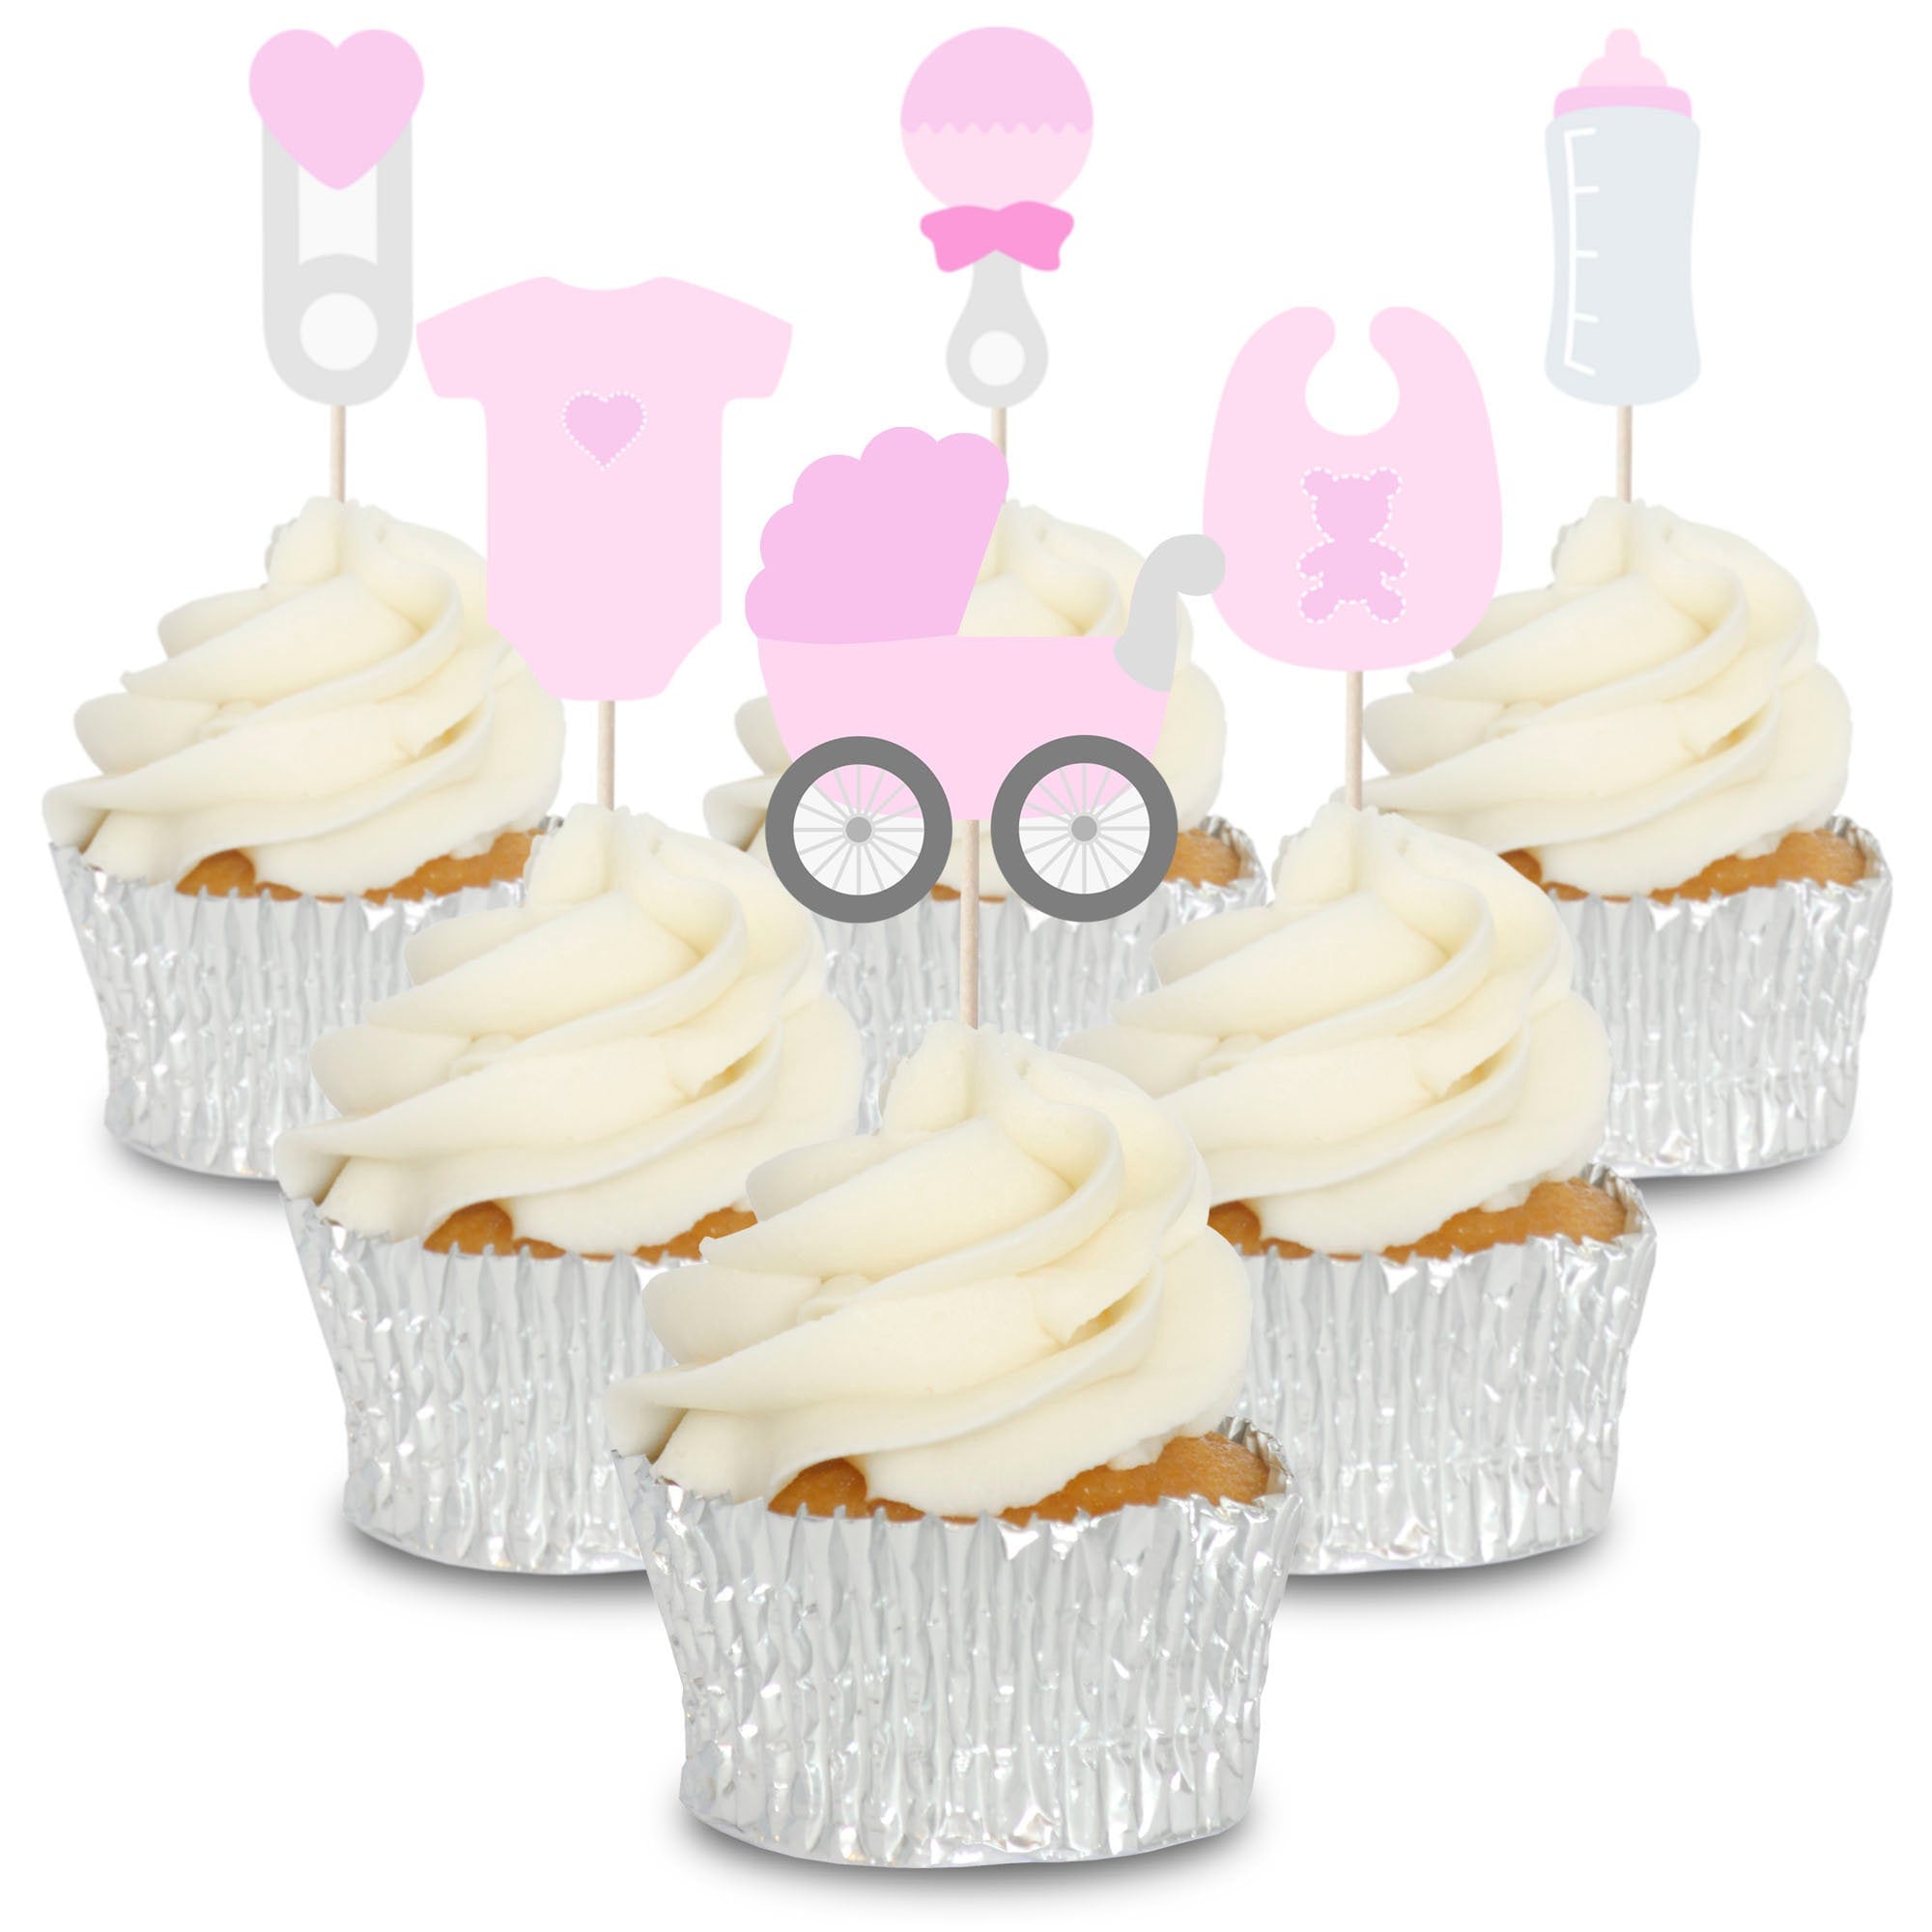 Bilder bild cupcake bilder bilder bild muffin küche bild cupcake bild bilder muffin bilder bild